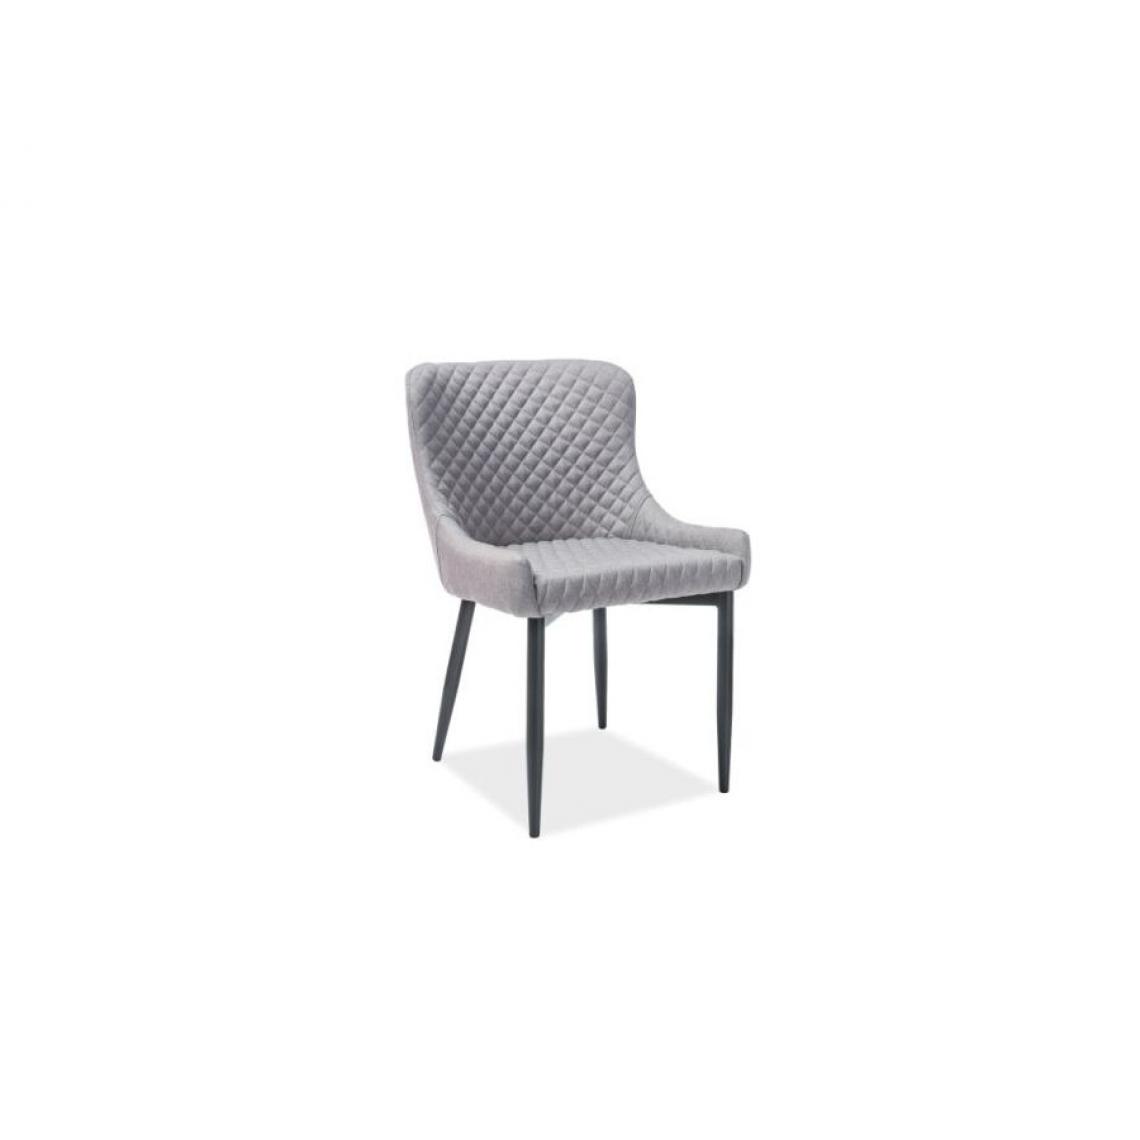 Hucoco - COLIM | Chaise moderne matelassé | Dimensions 84x51x45 cm | Rembourrage en tissu | Pieds en métal | Salle à manger Salon - Gris - Chaises